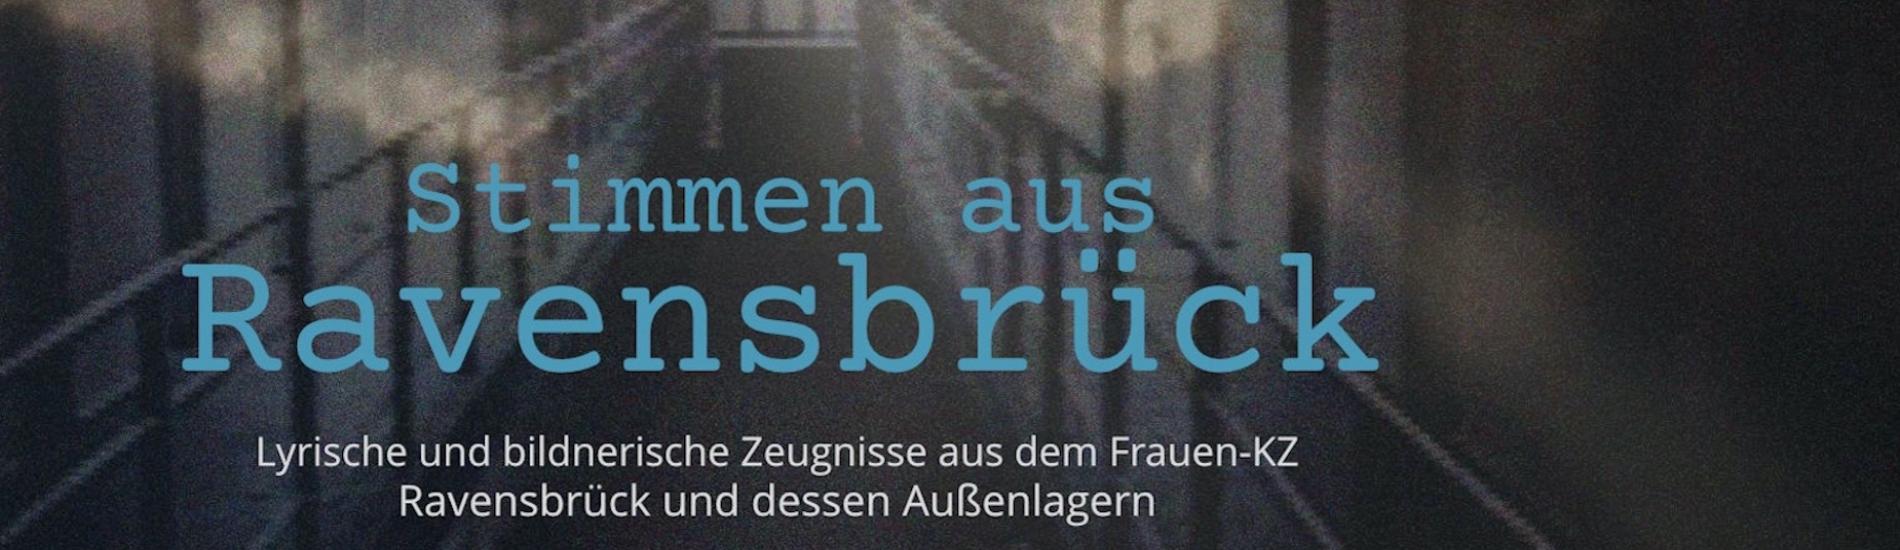 Stimmen aus Ravensbrück  Lyrische und bildnerische Zeugnisse von Frauen aus dem Konzentrationslager Ravensbrück und dessen Außenlagern